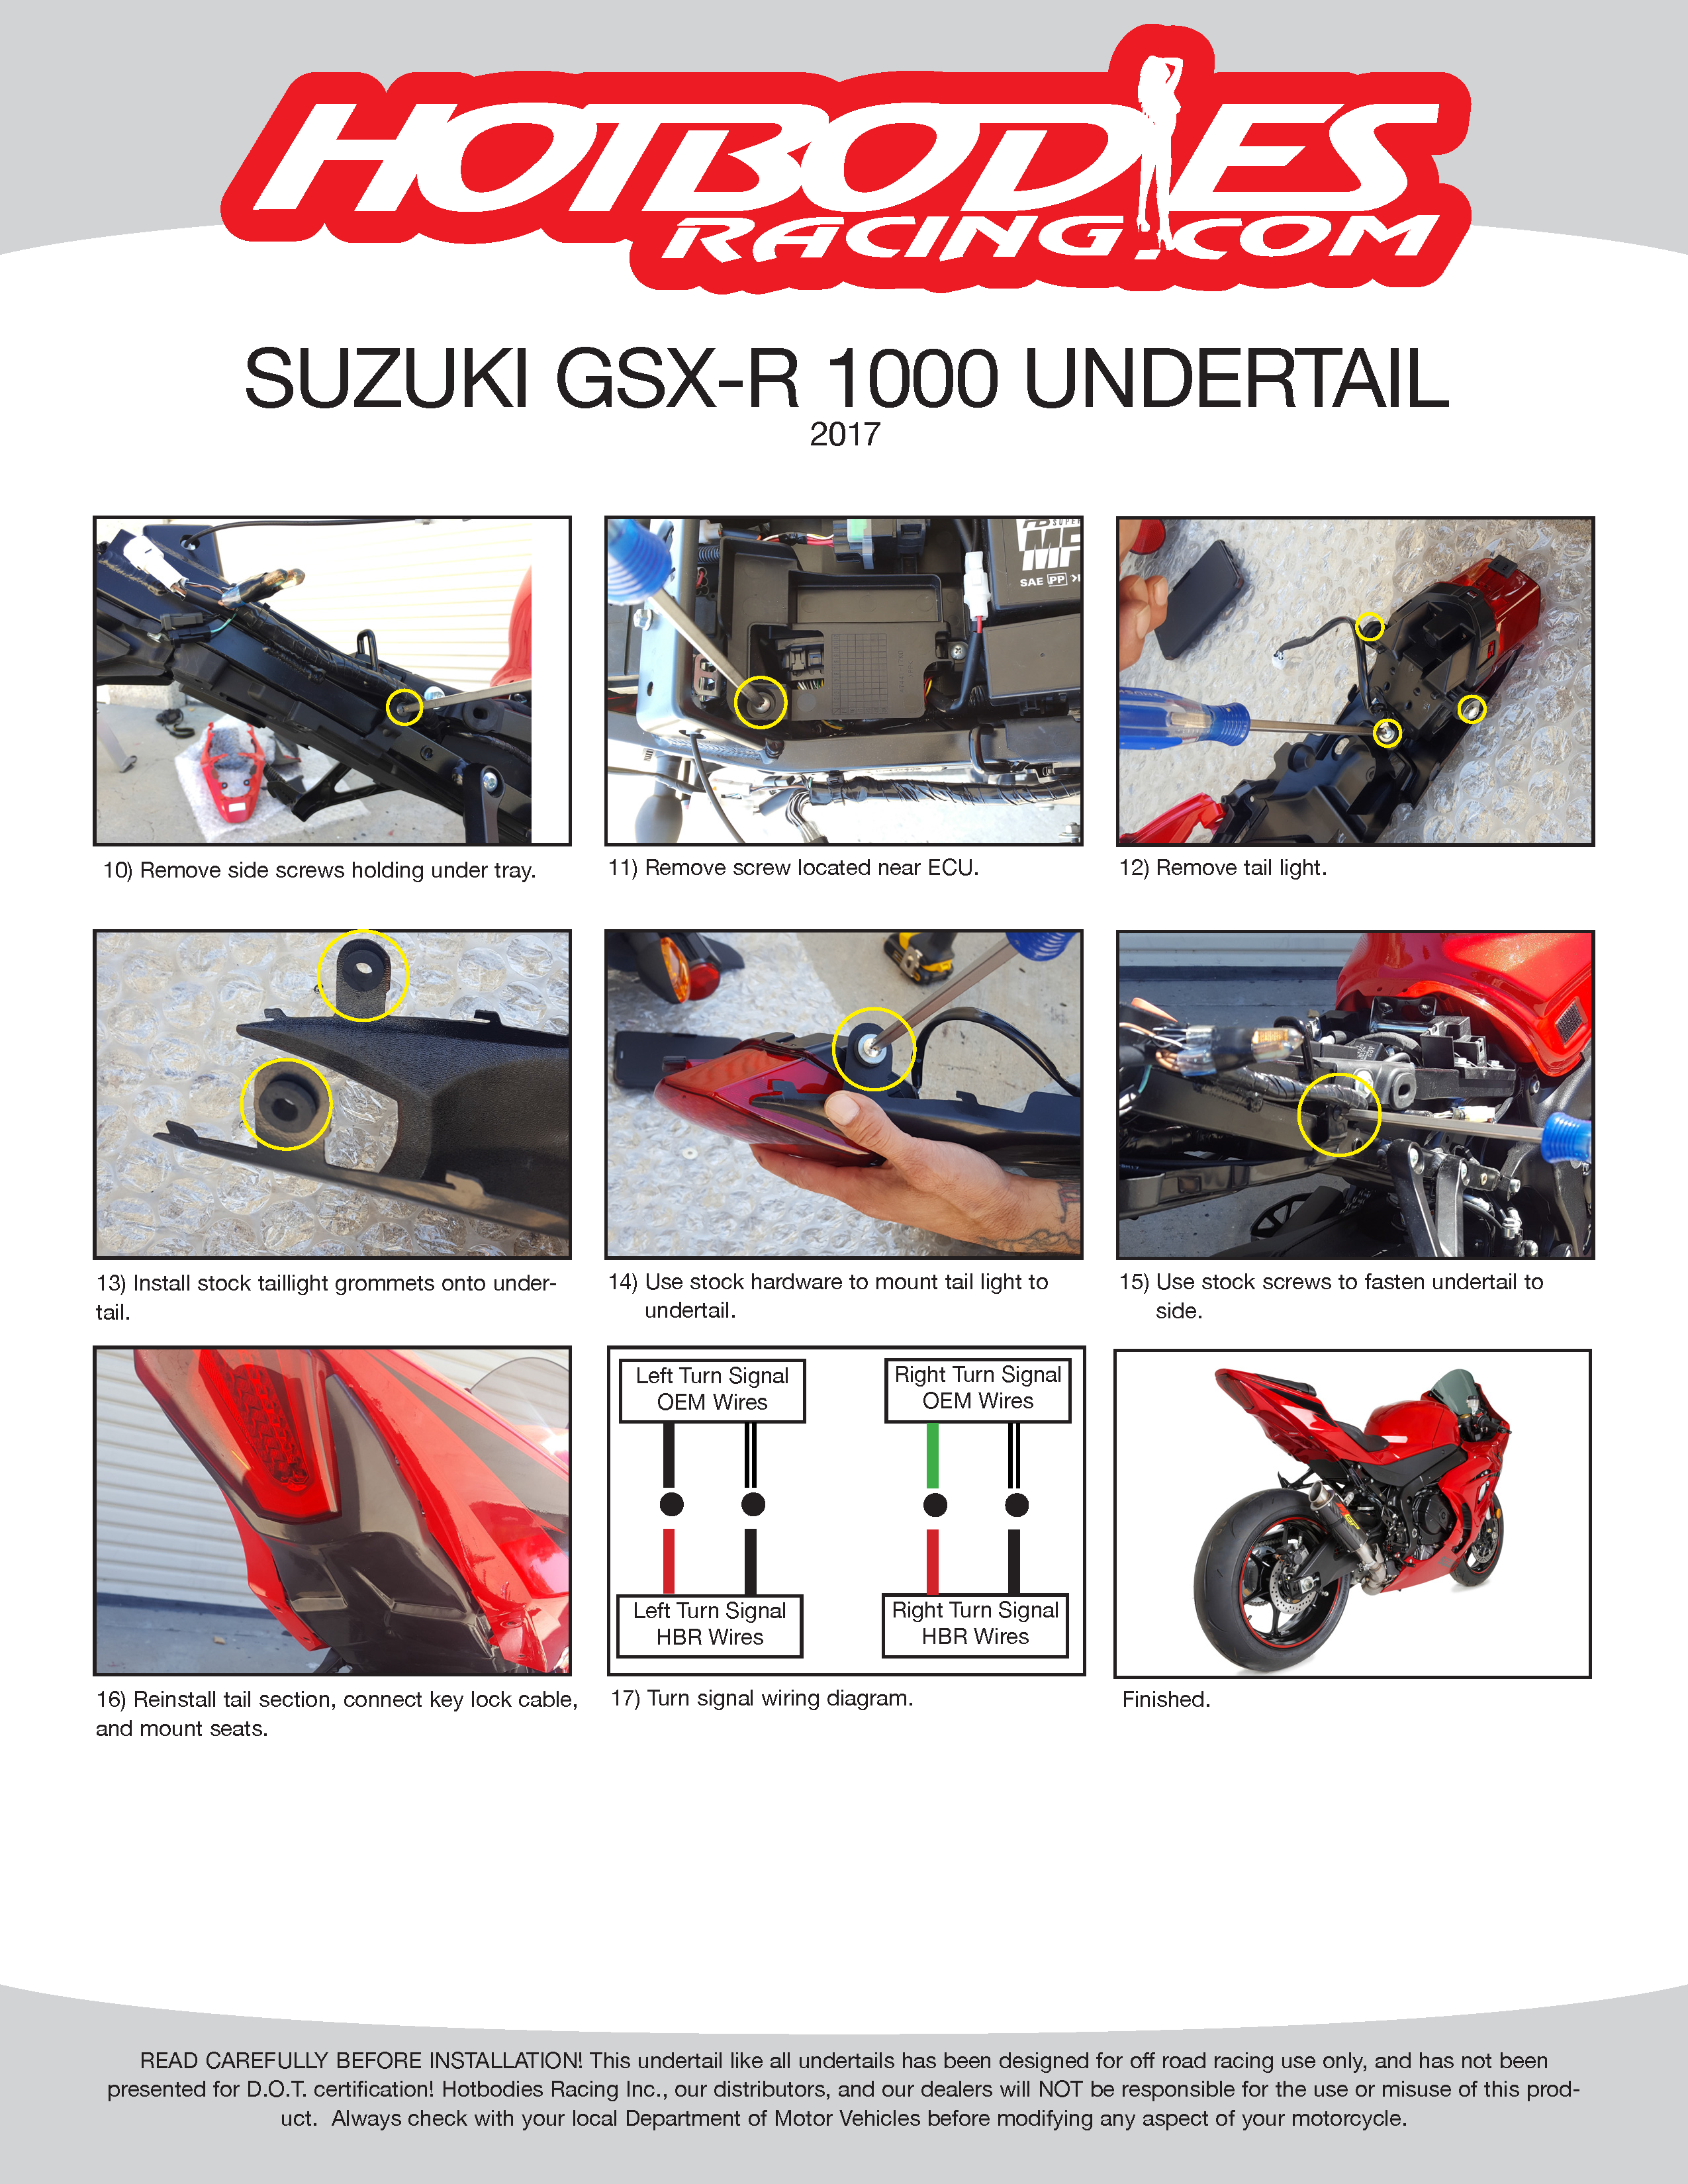 

GSX-R 1000 2017 Undertail Installation

